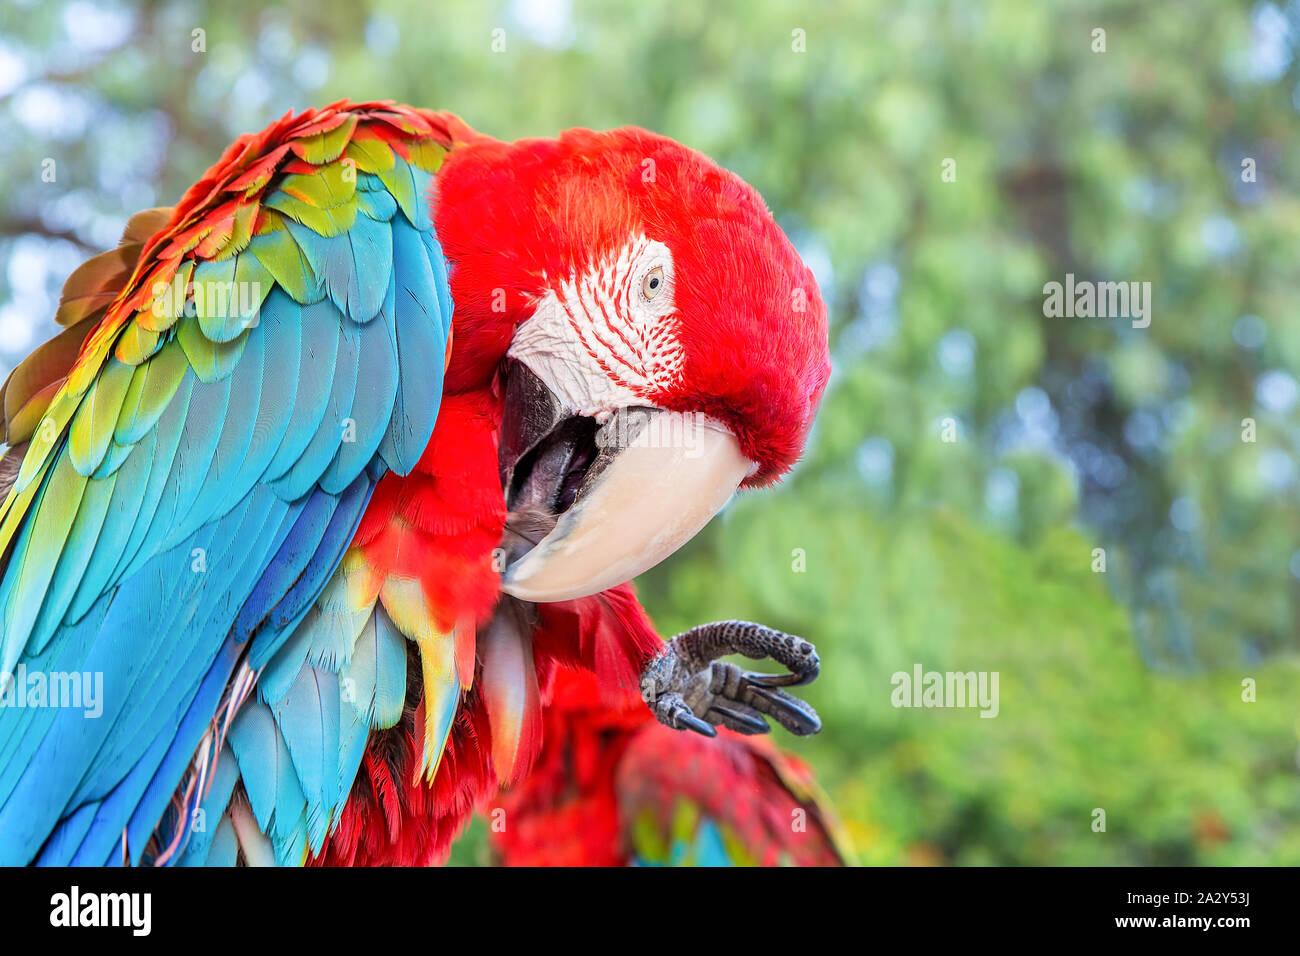 Roter Ara oder Papagei mit blue wing Reinigung der Federn Stockfoto